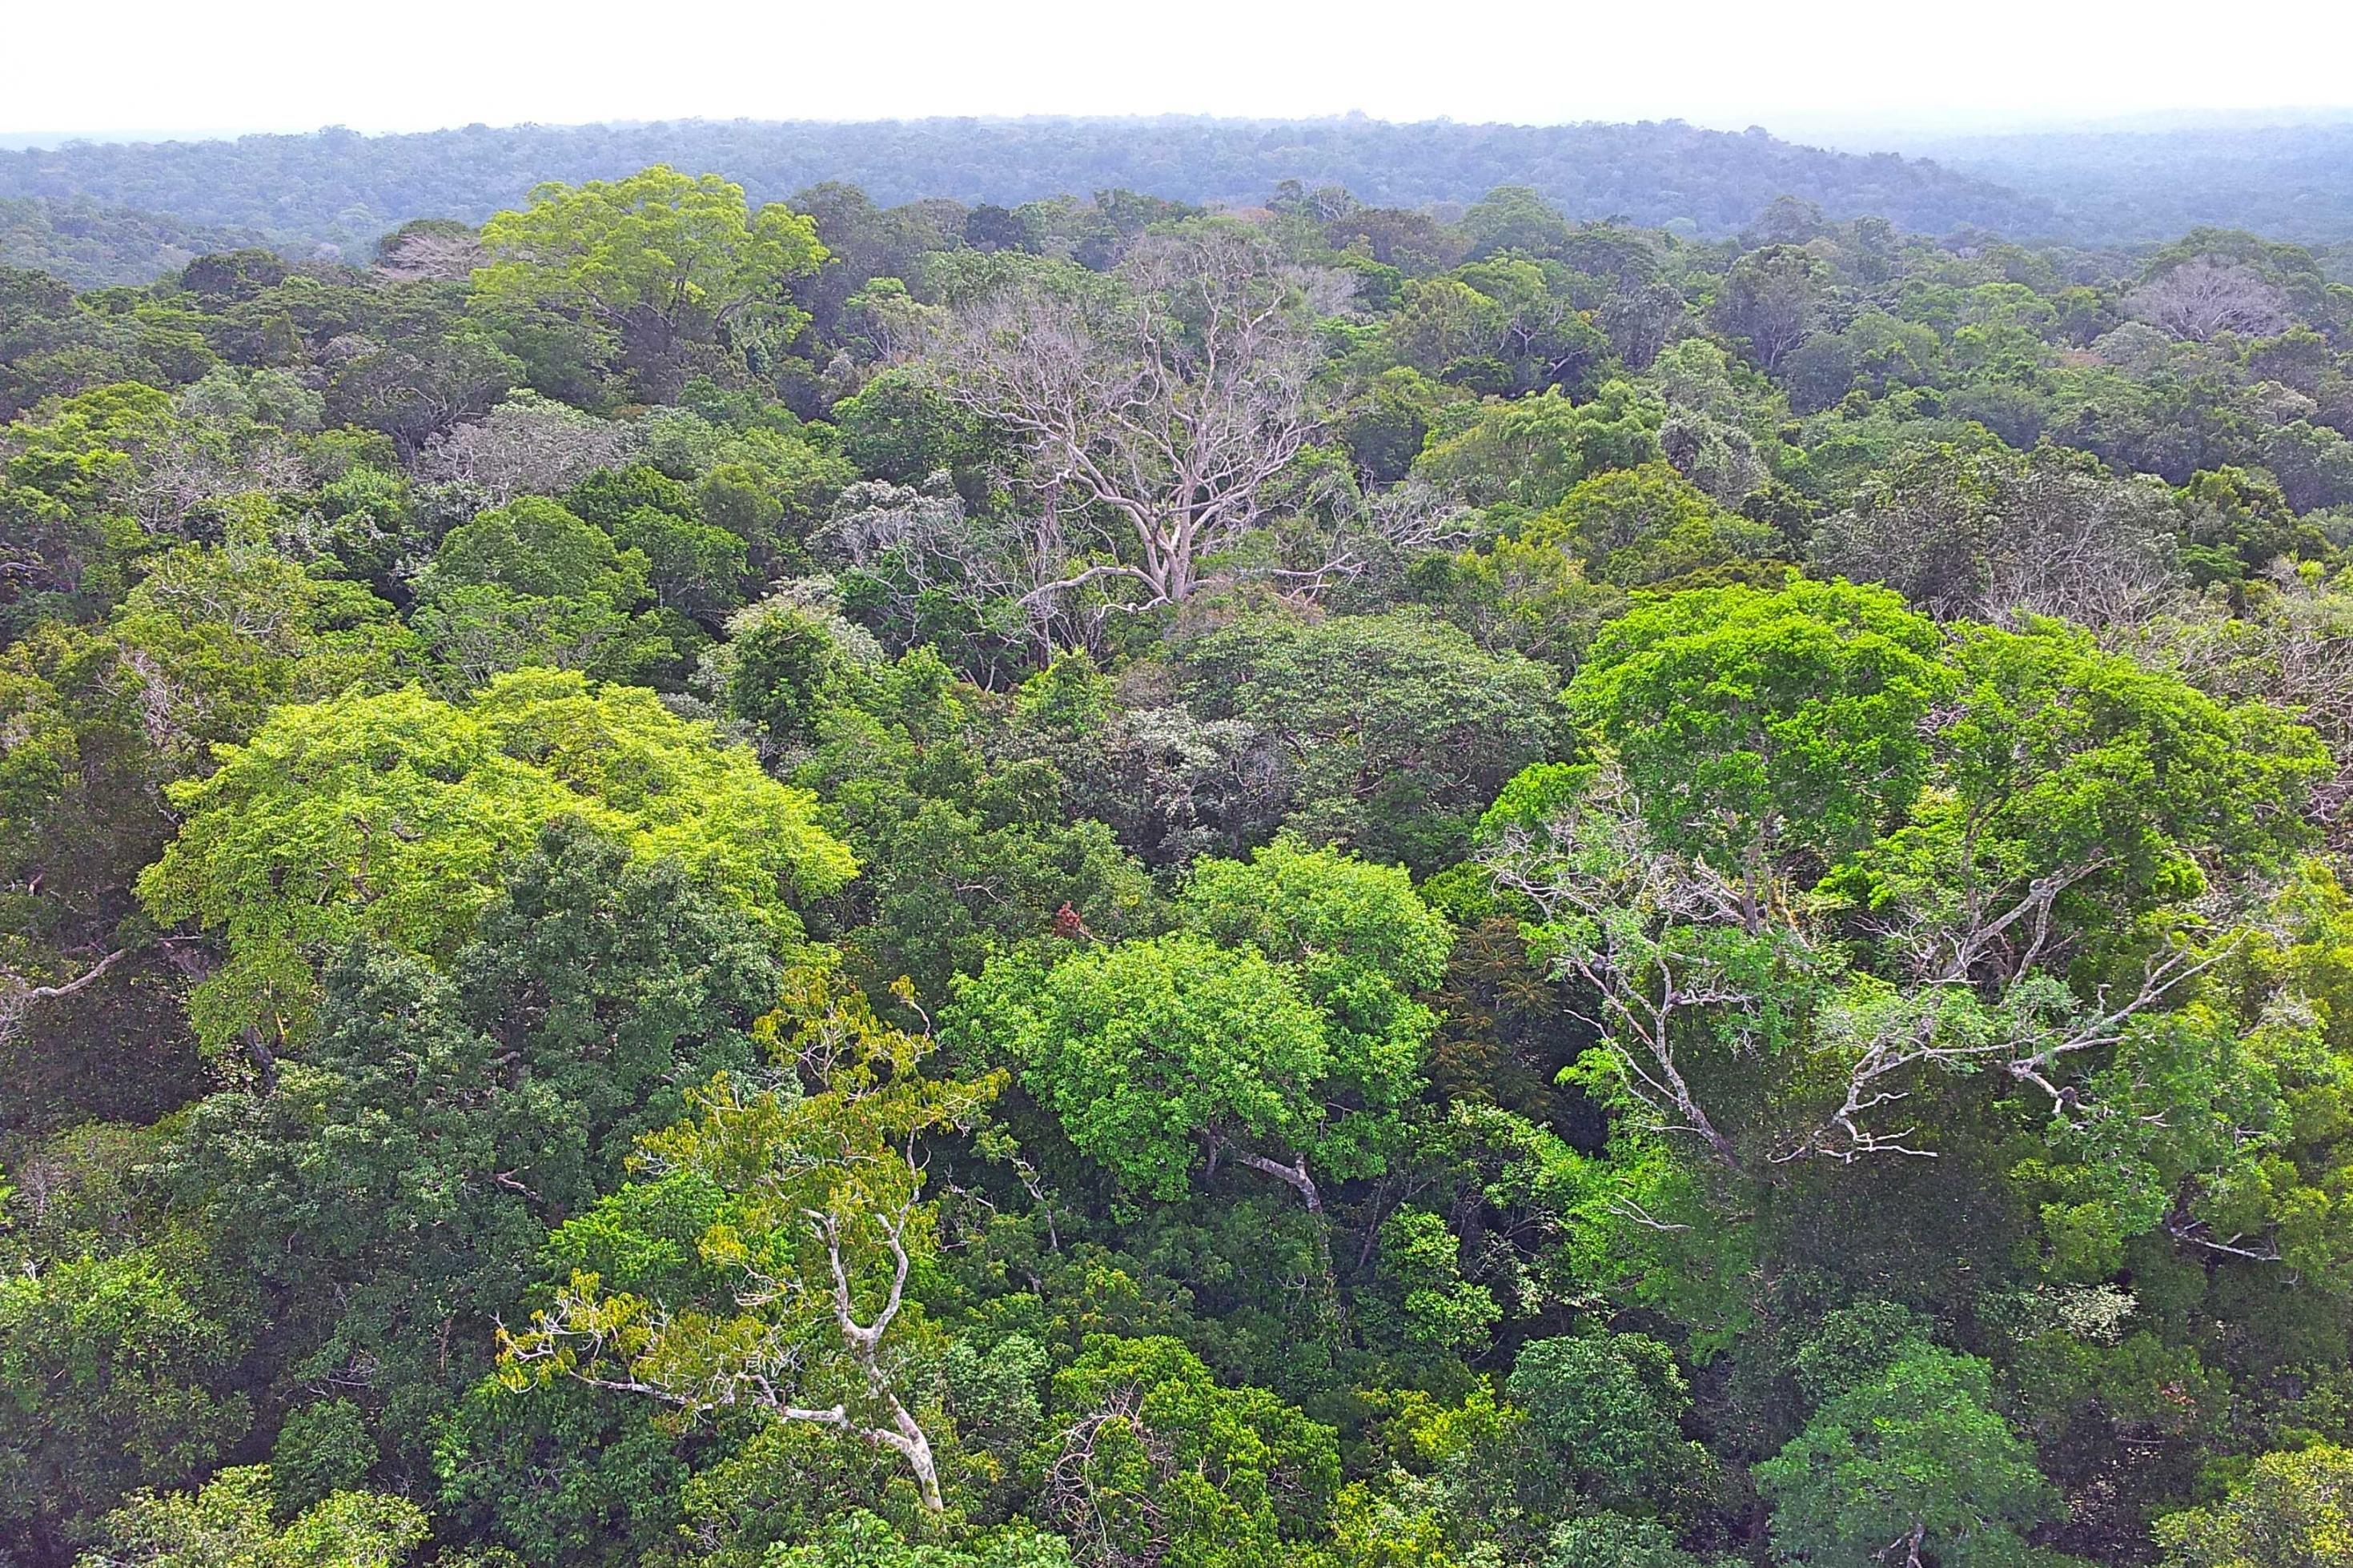 Blick über den Amazonas-Regenwald von einem Forschungsturm aus